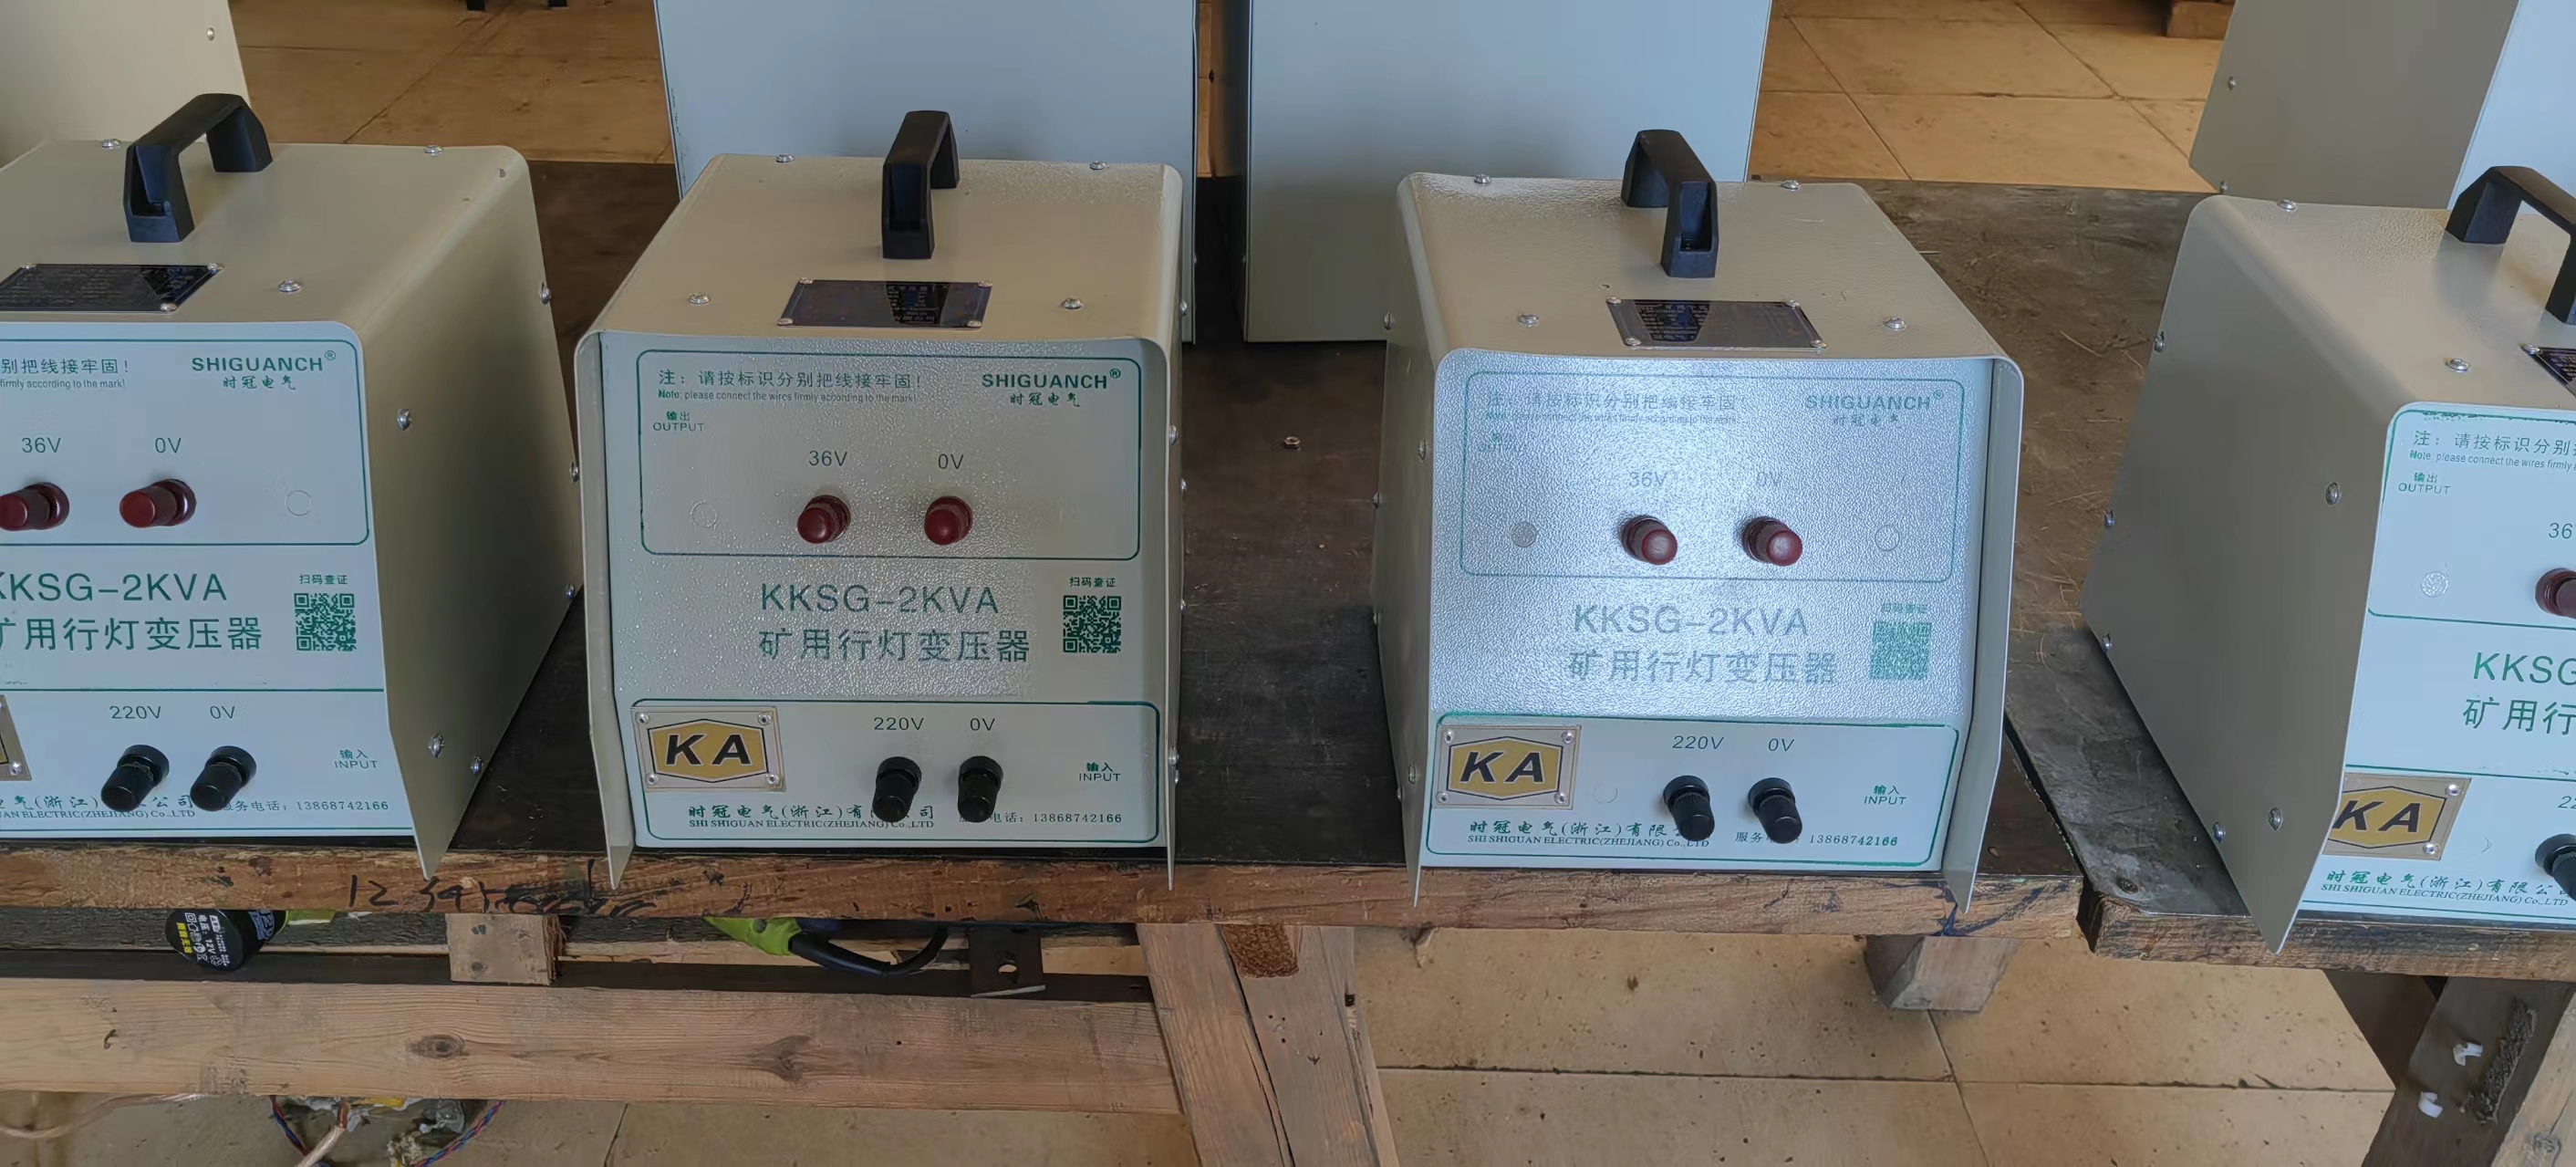 KKSG-2KVA矿用行灯变压器KKSG-2KVA矿用行灯变压器批发价-供应商-报价-价格-多少钱